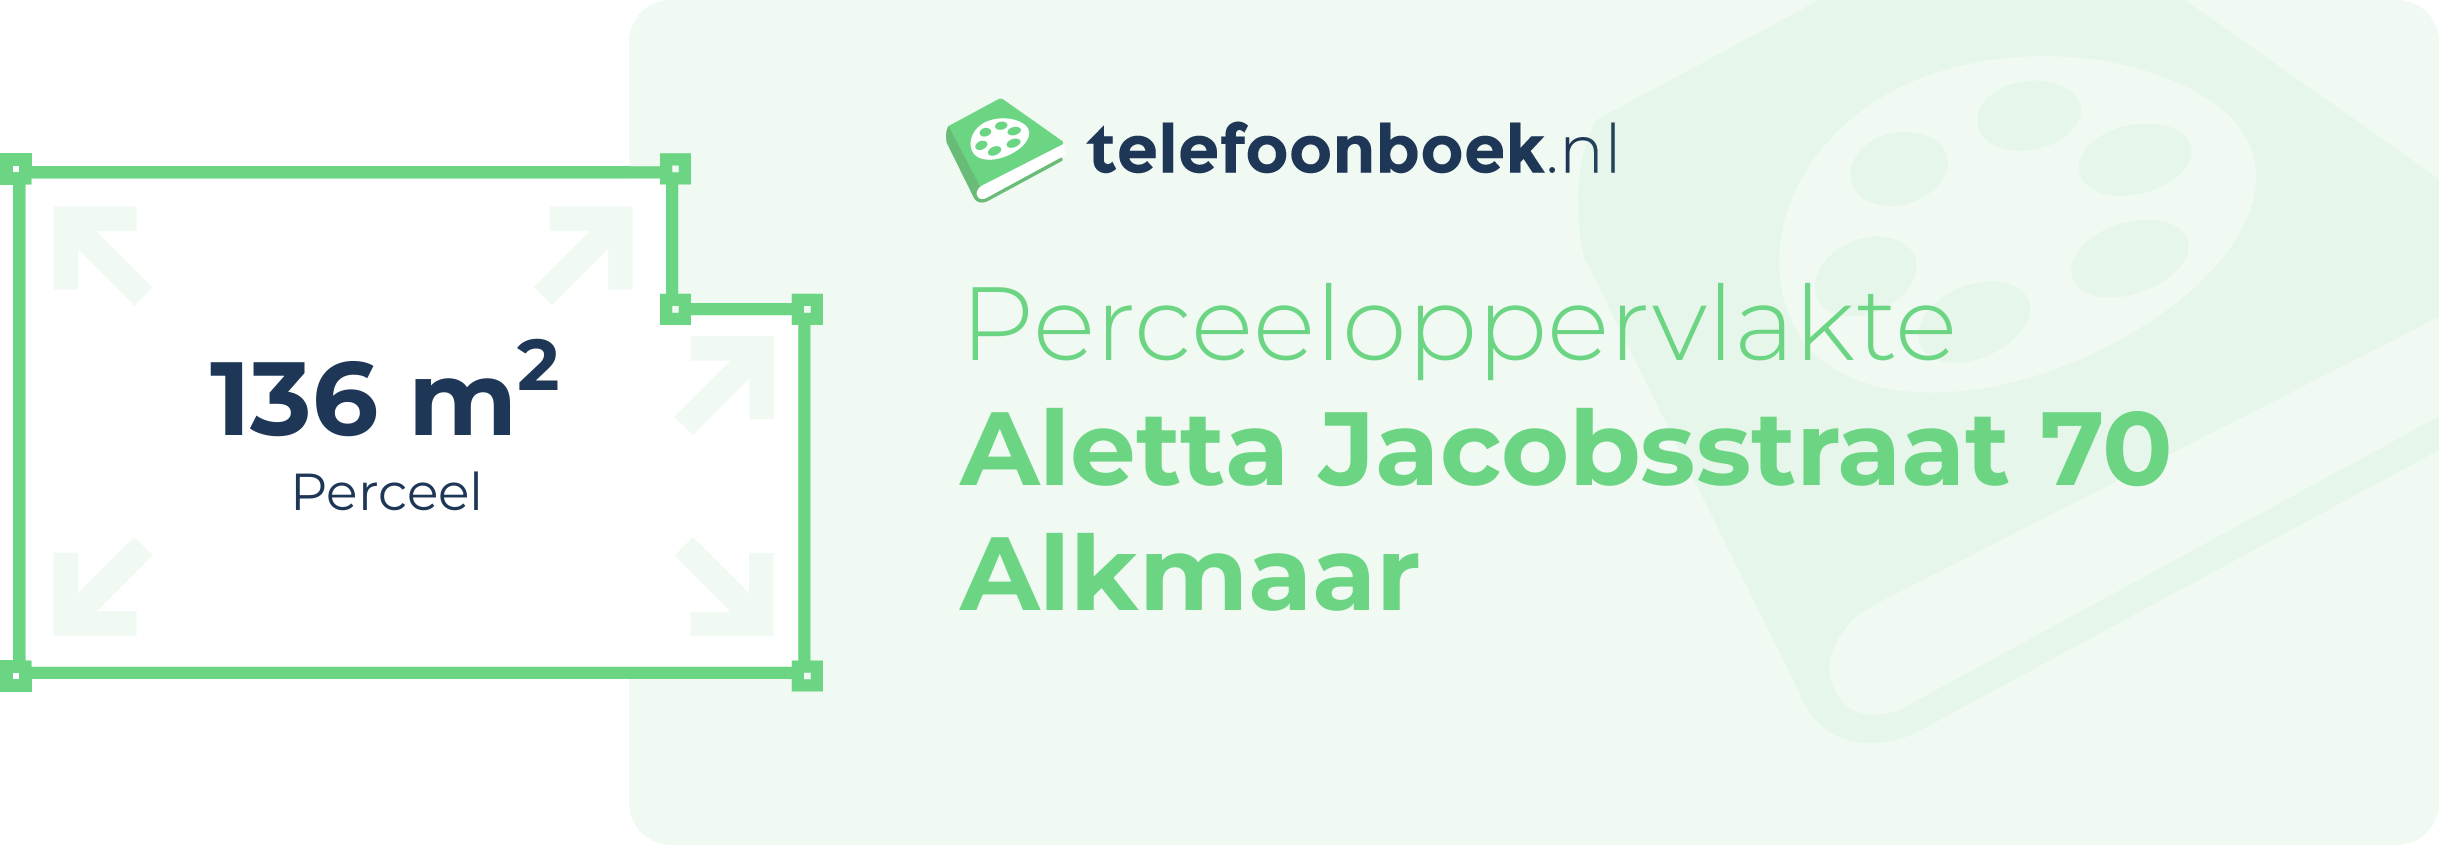 Perceeloppervlakte Aletta Jacobsstraat 70 Alkmaar